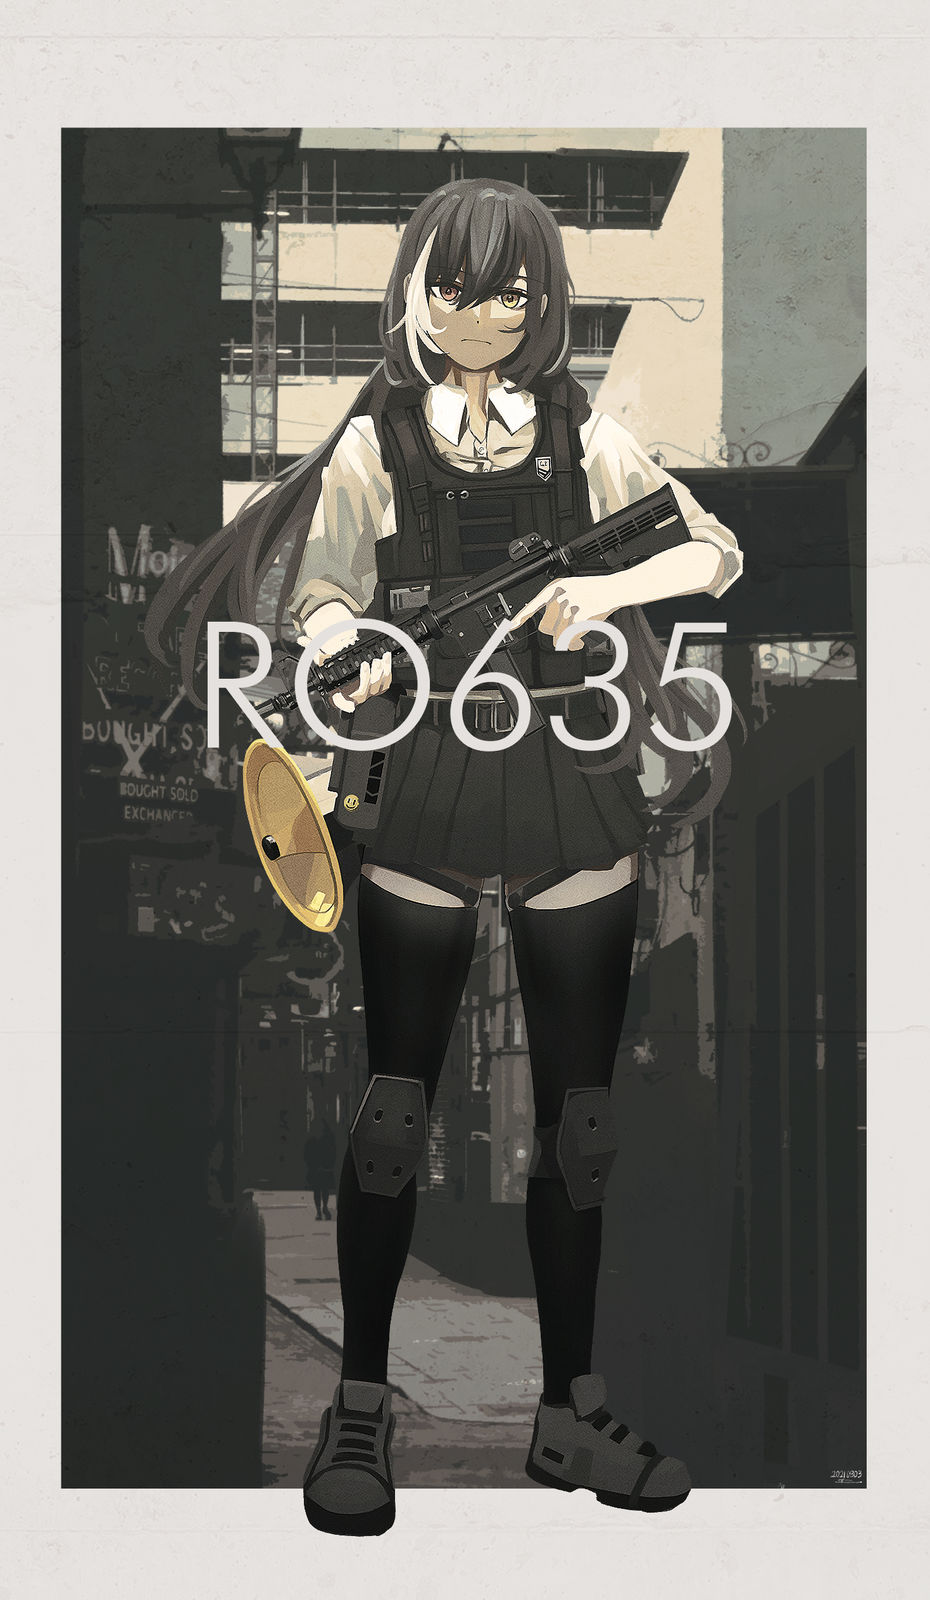 RO635插画图片壁纸